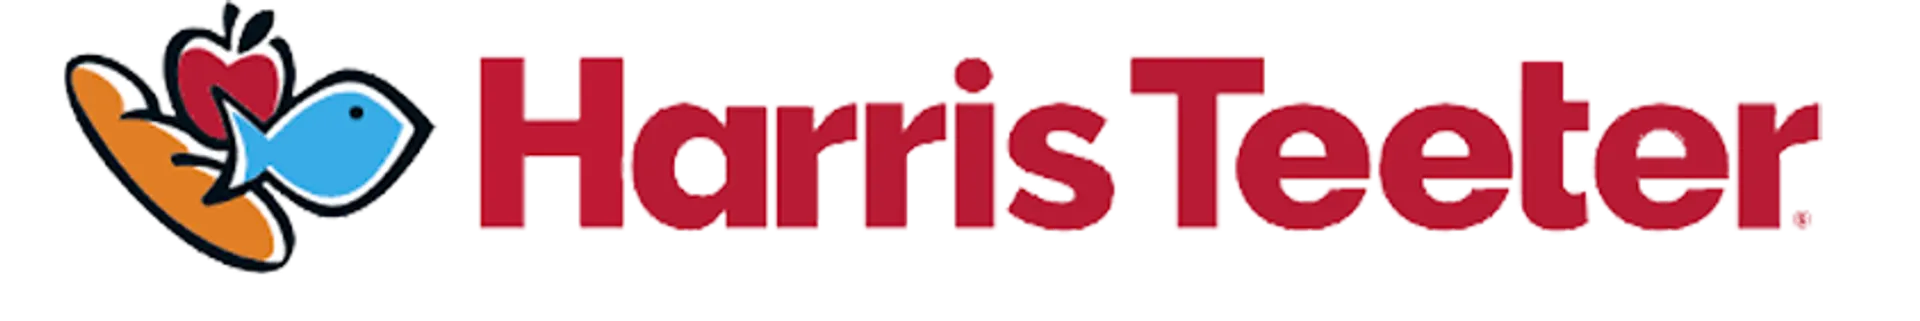 HARRIS TEETER logo de catálogo